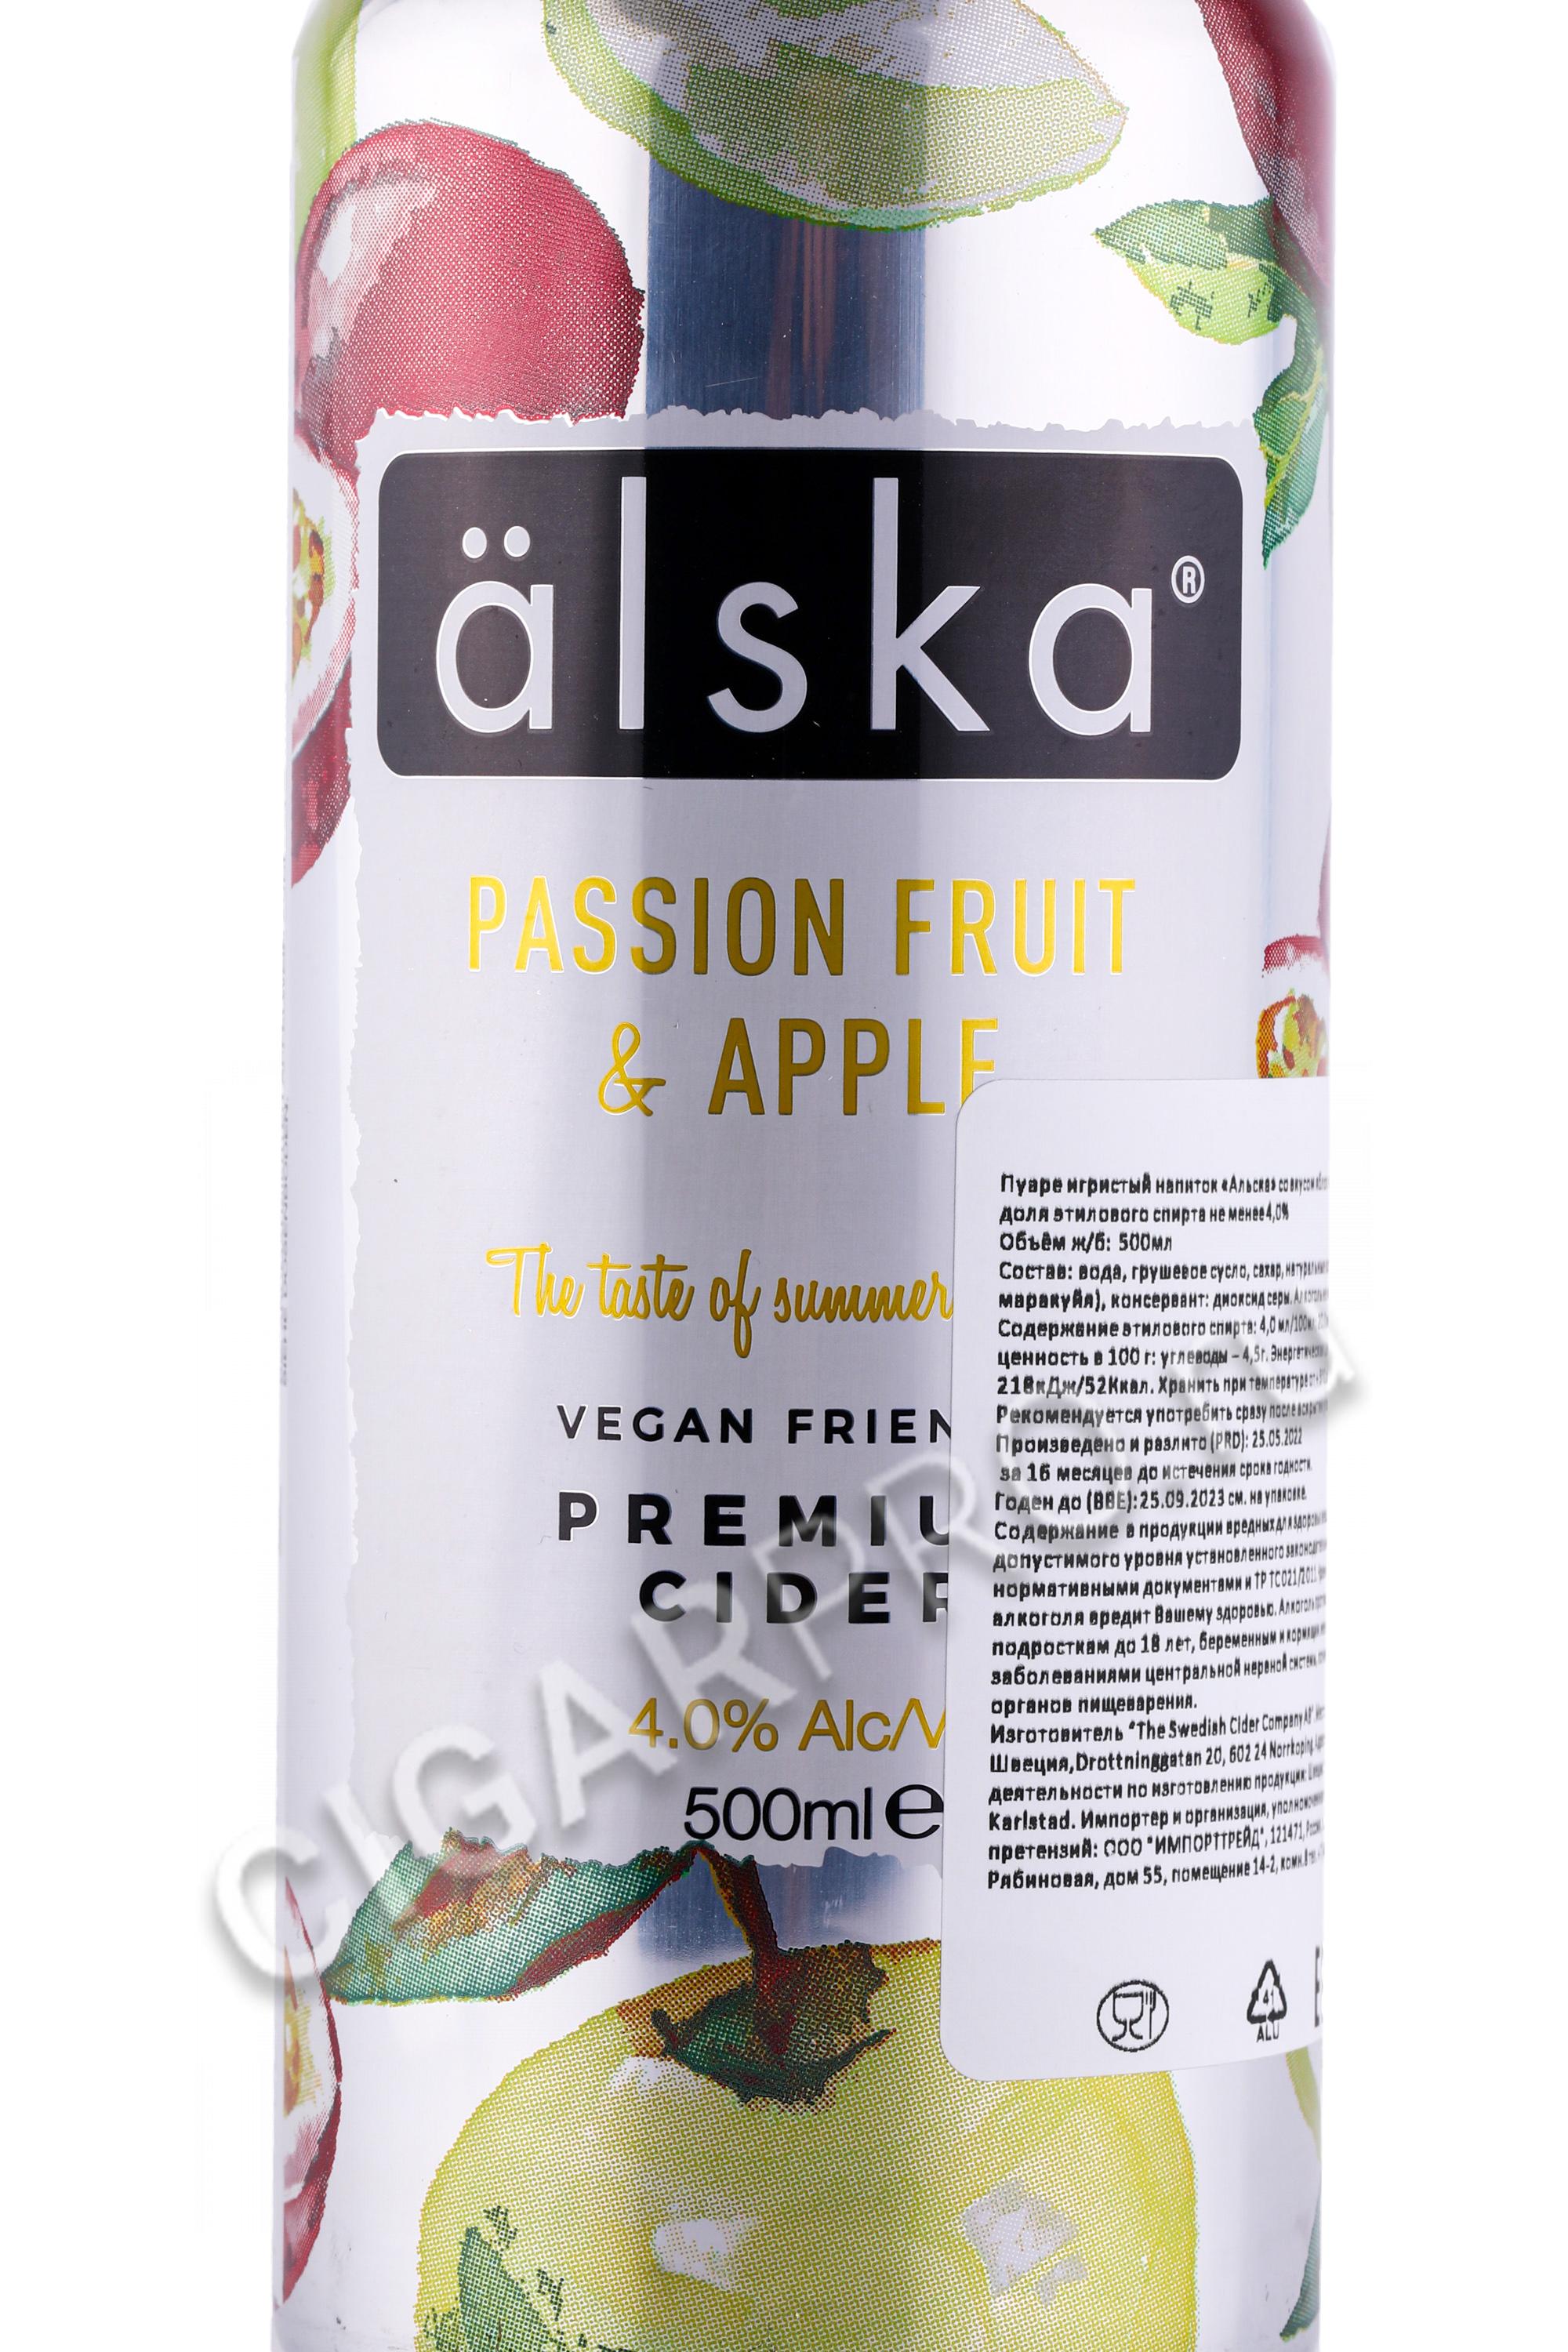 Alska passion fruit apple cider. Альска сидр. Шведский сидр альска. Сидр passion Fruit. Шведский сидр Alaska.